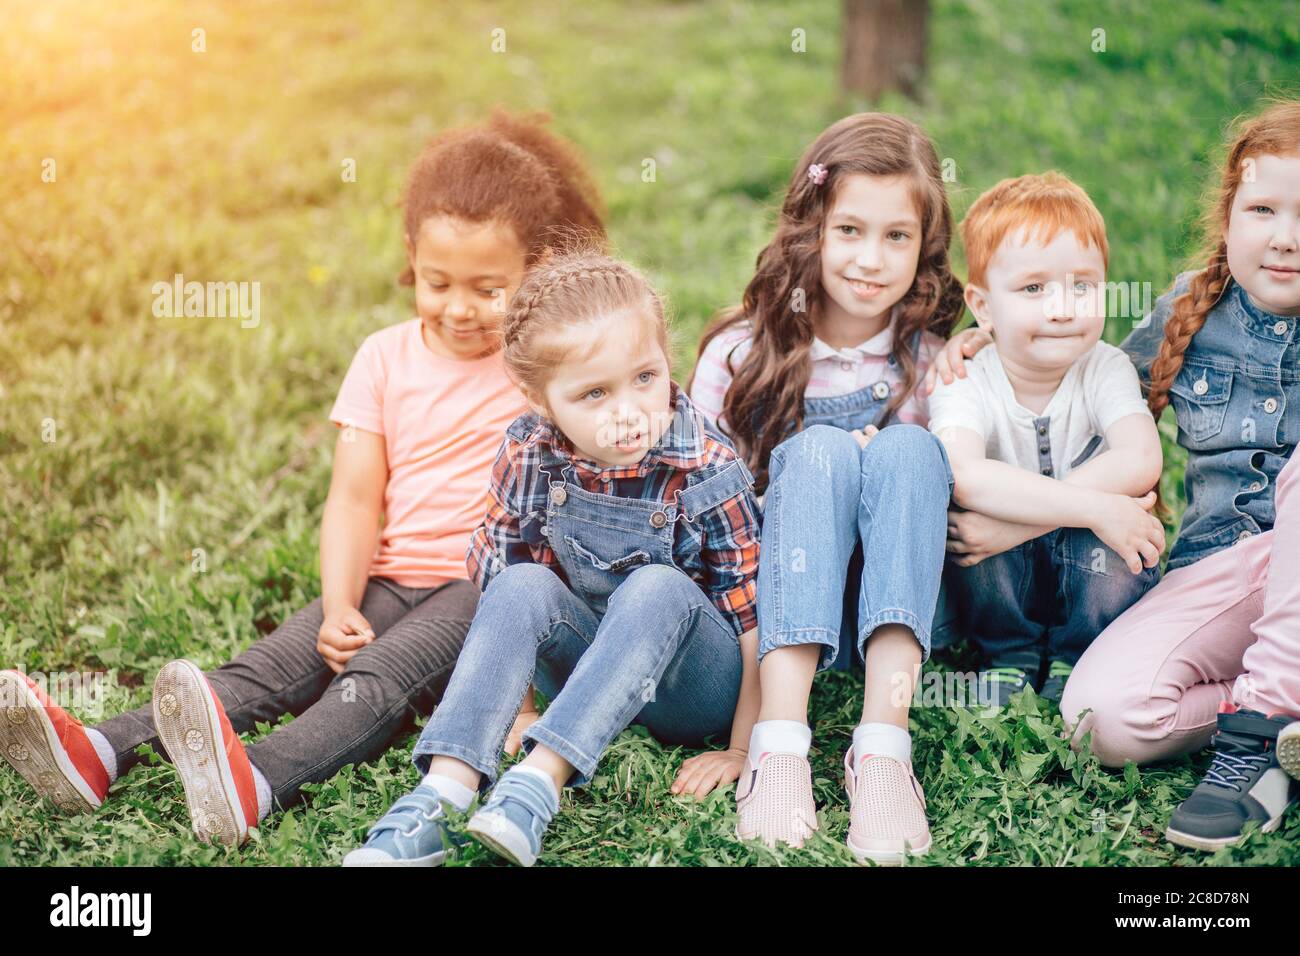 Image de garçons et filles heureux assis sur l'herbe verte. Le concept de l'enfance, de l'amitié et de la communication multiculturelle Banque D'Images